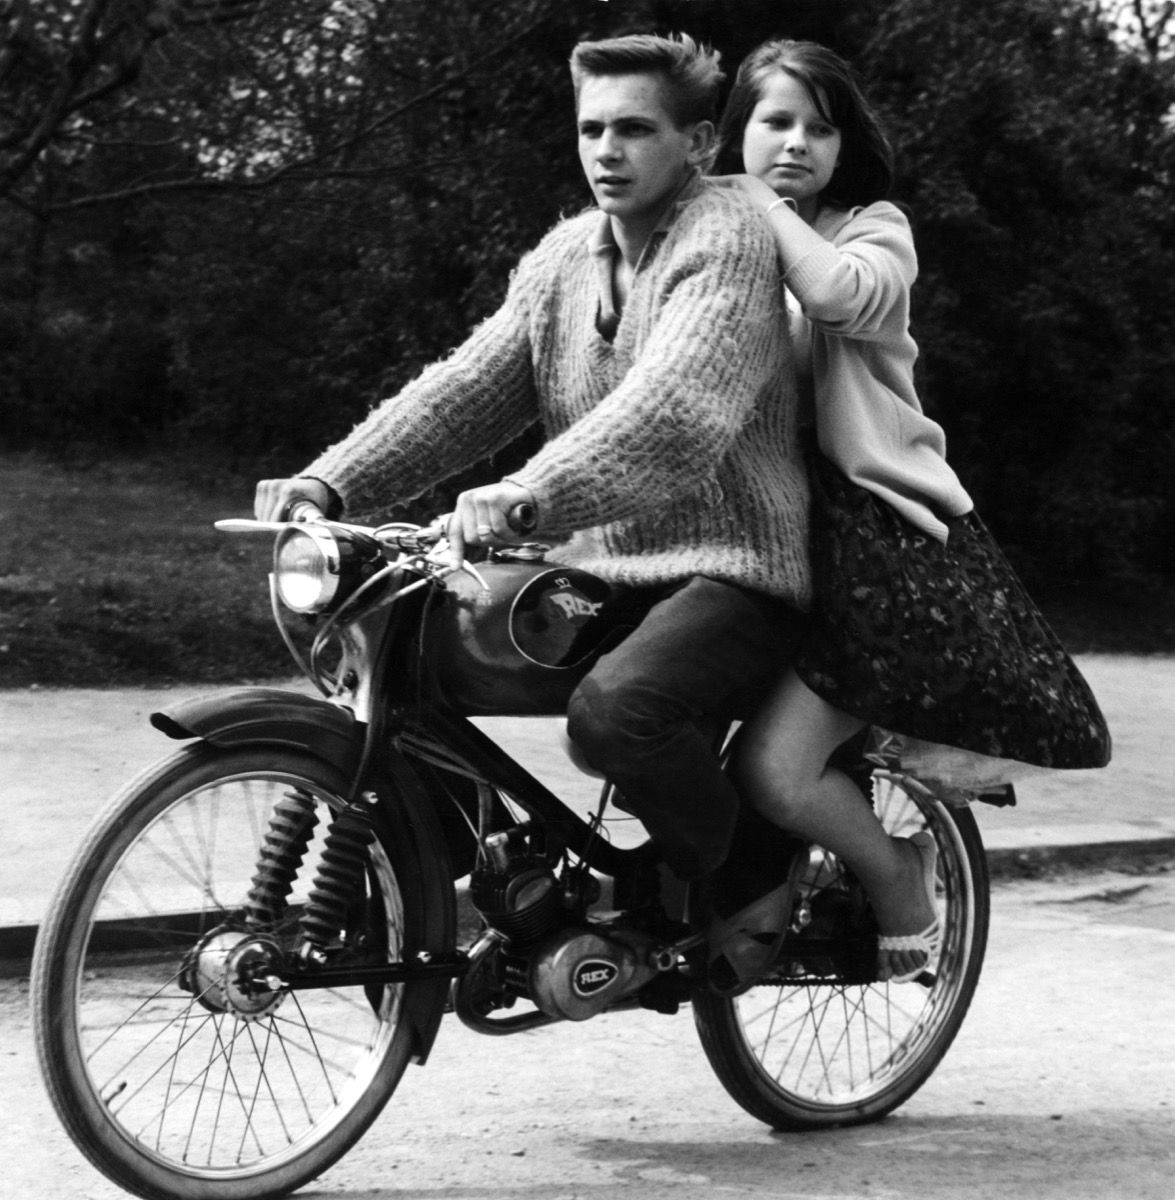 रेक्स, 1950 के दशक में ऑटो पर युवा युगल